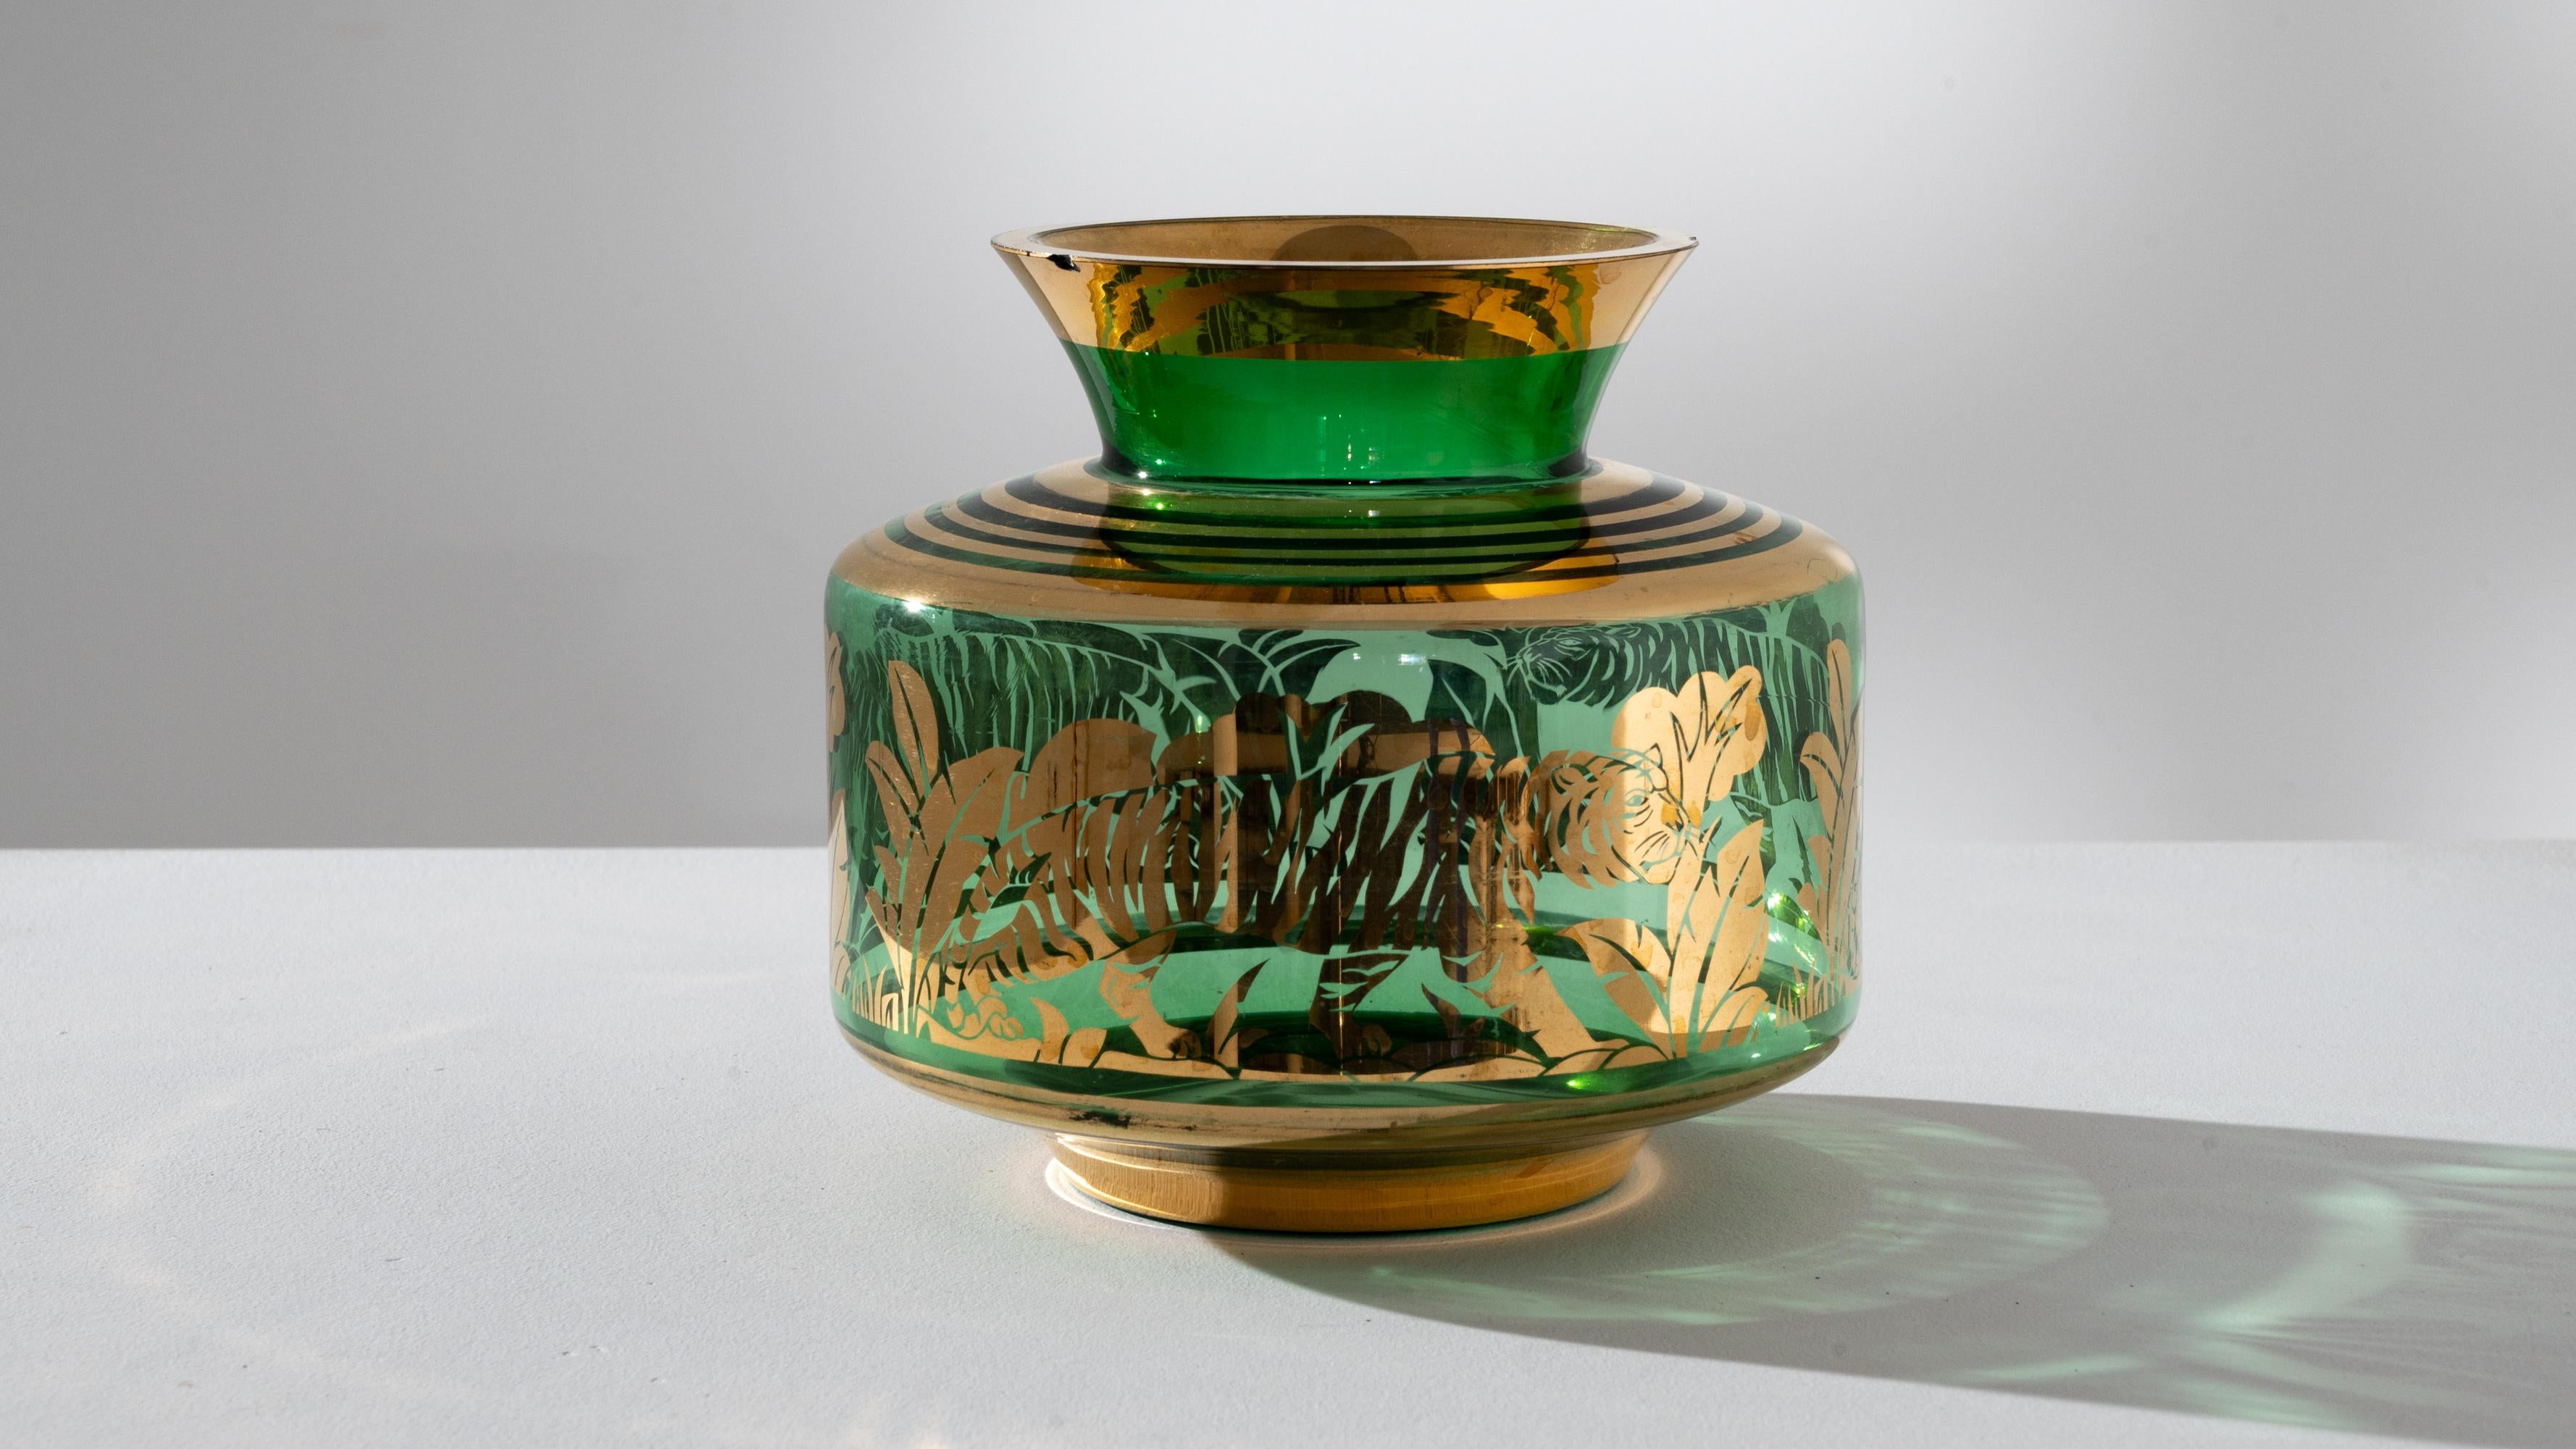 Élevez votre espace avec l'allure captivante de ce vase en verre tigré français des années 1940. La riche teinte verte du vase, ornée de luxueux accents dorés, vous transporte dans un cadre exotique. Des motifs dorés complexes représentent un tigre